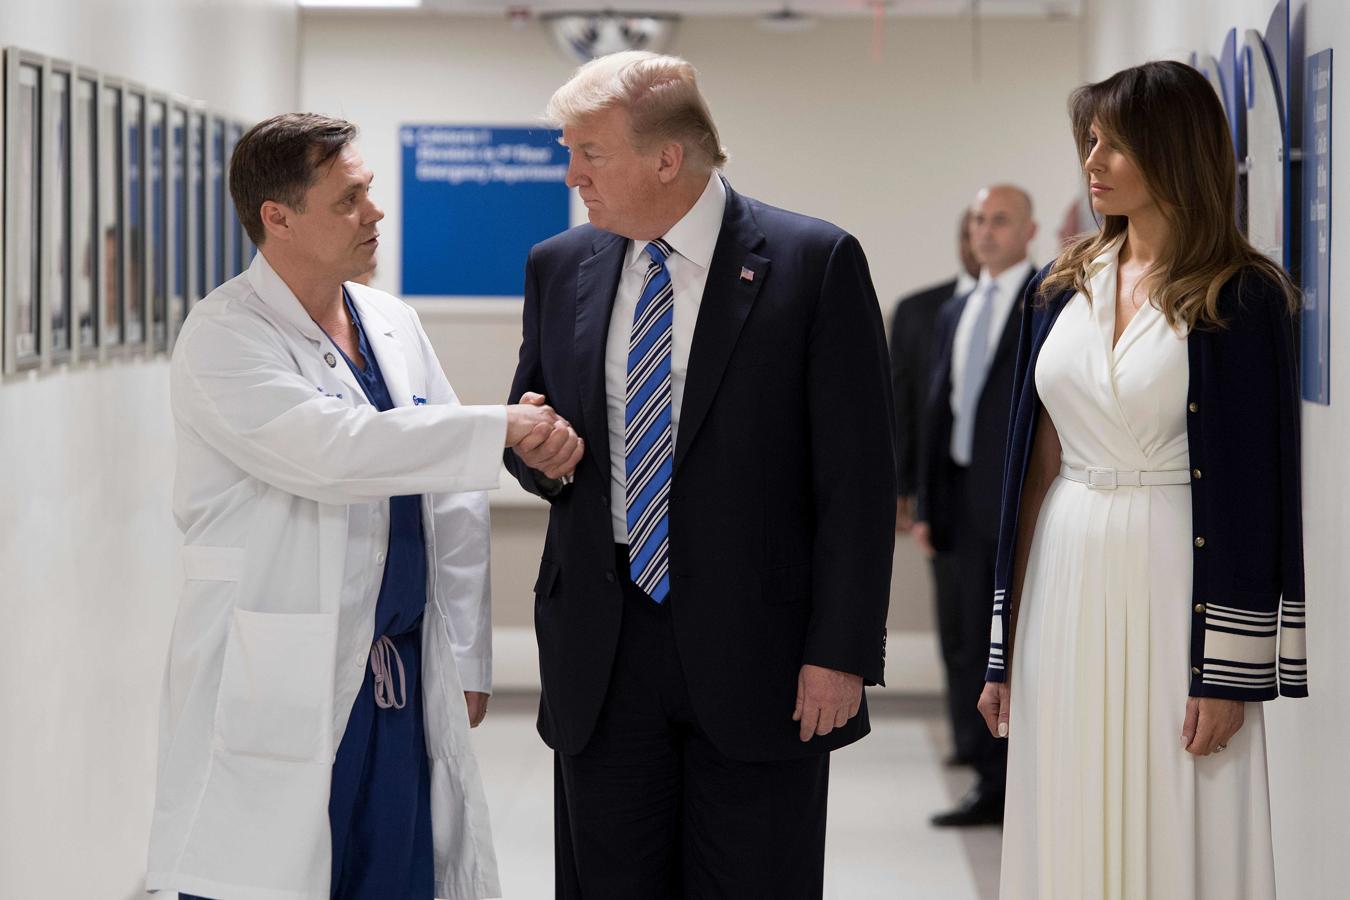 El presidente de EE. UU., Donald Trump, estrecha la mano del doctor Igor Nichiphorenko (izq.) Junto a la primera dama Melania Trump durante su visita al personal del hospital Broward Health North Pompano Beach, Florida, el 16 de febrero de 2018.